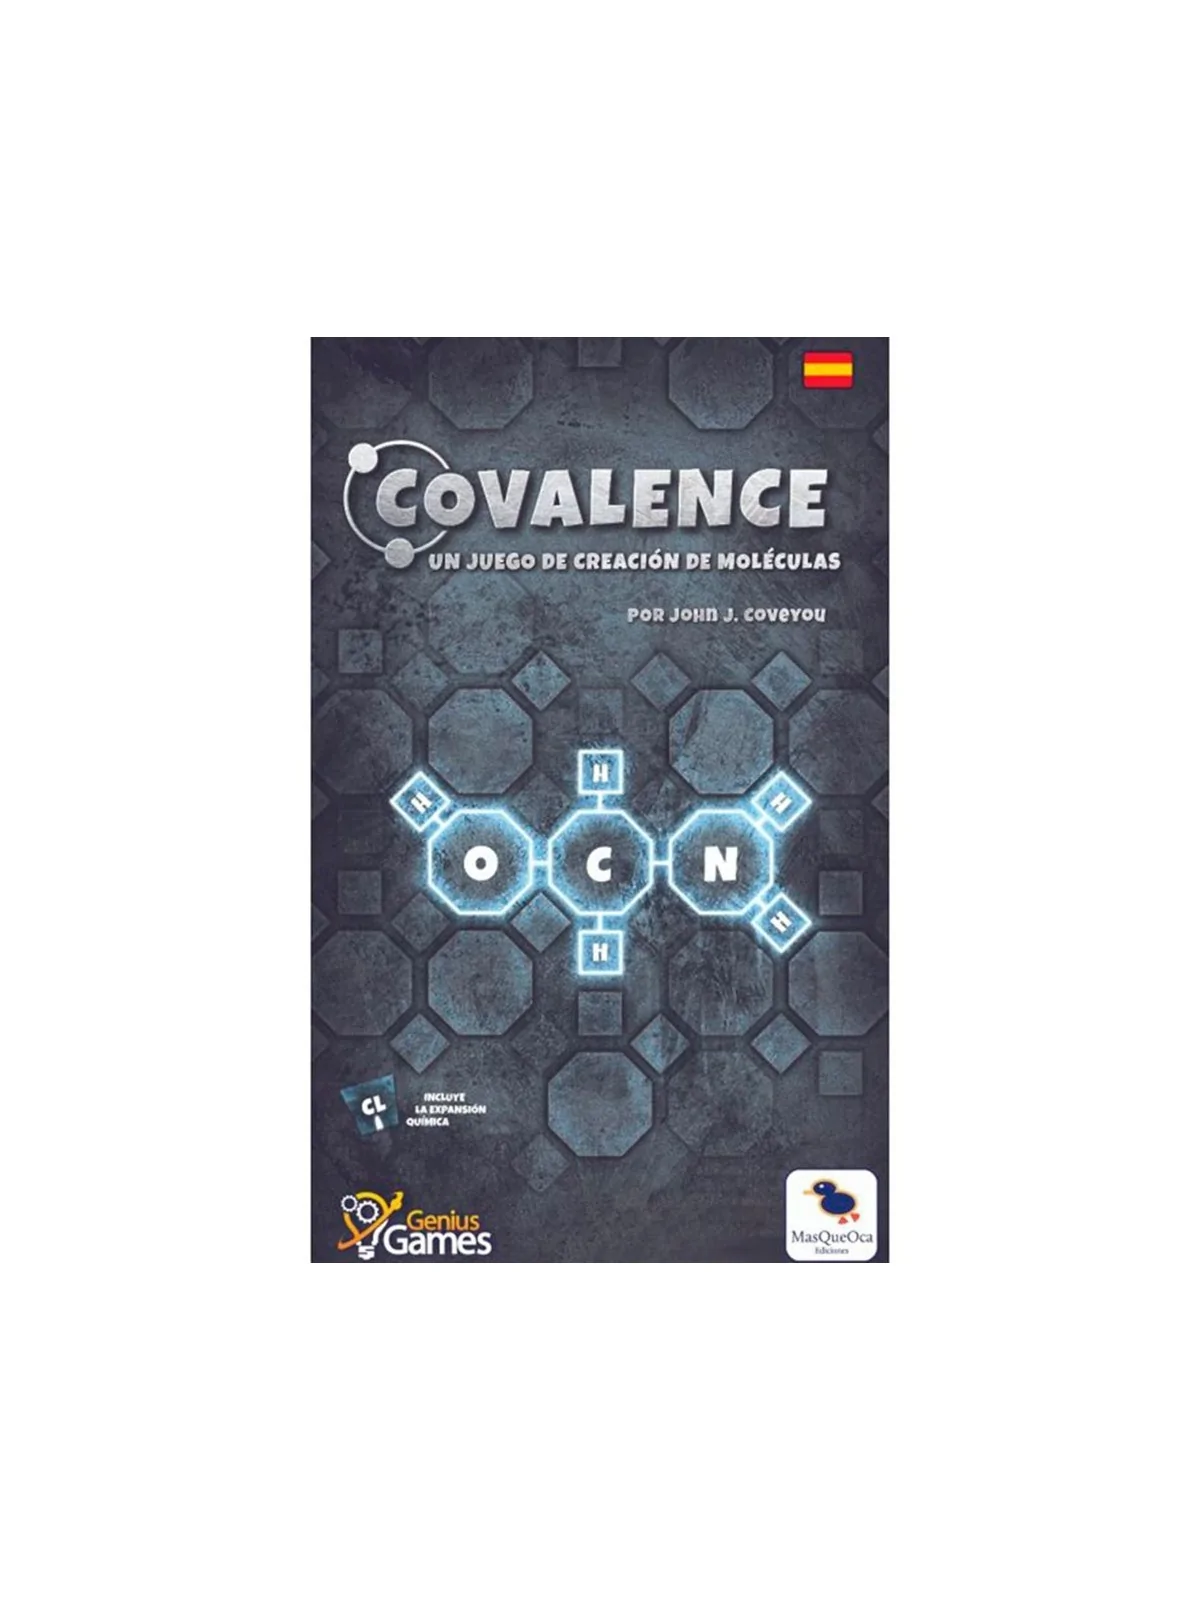 Comprar Covalence: El Juego de Construcción de Moléculas barato al mej